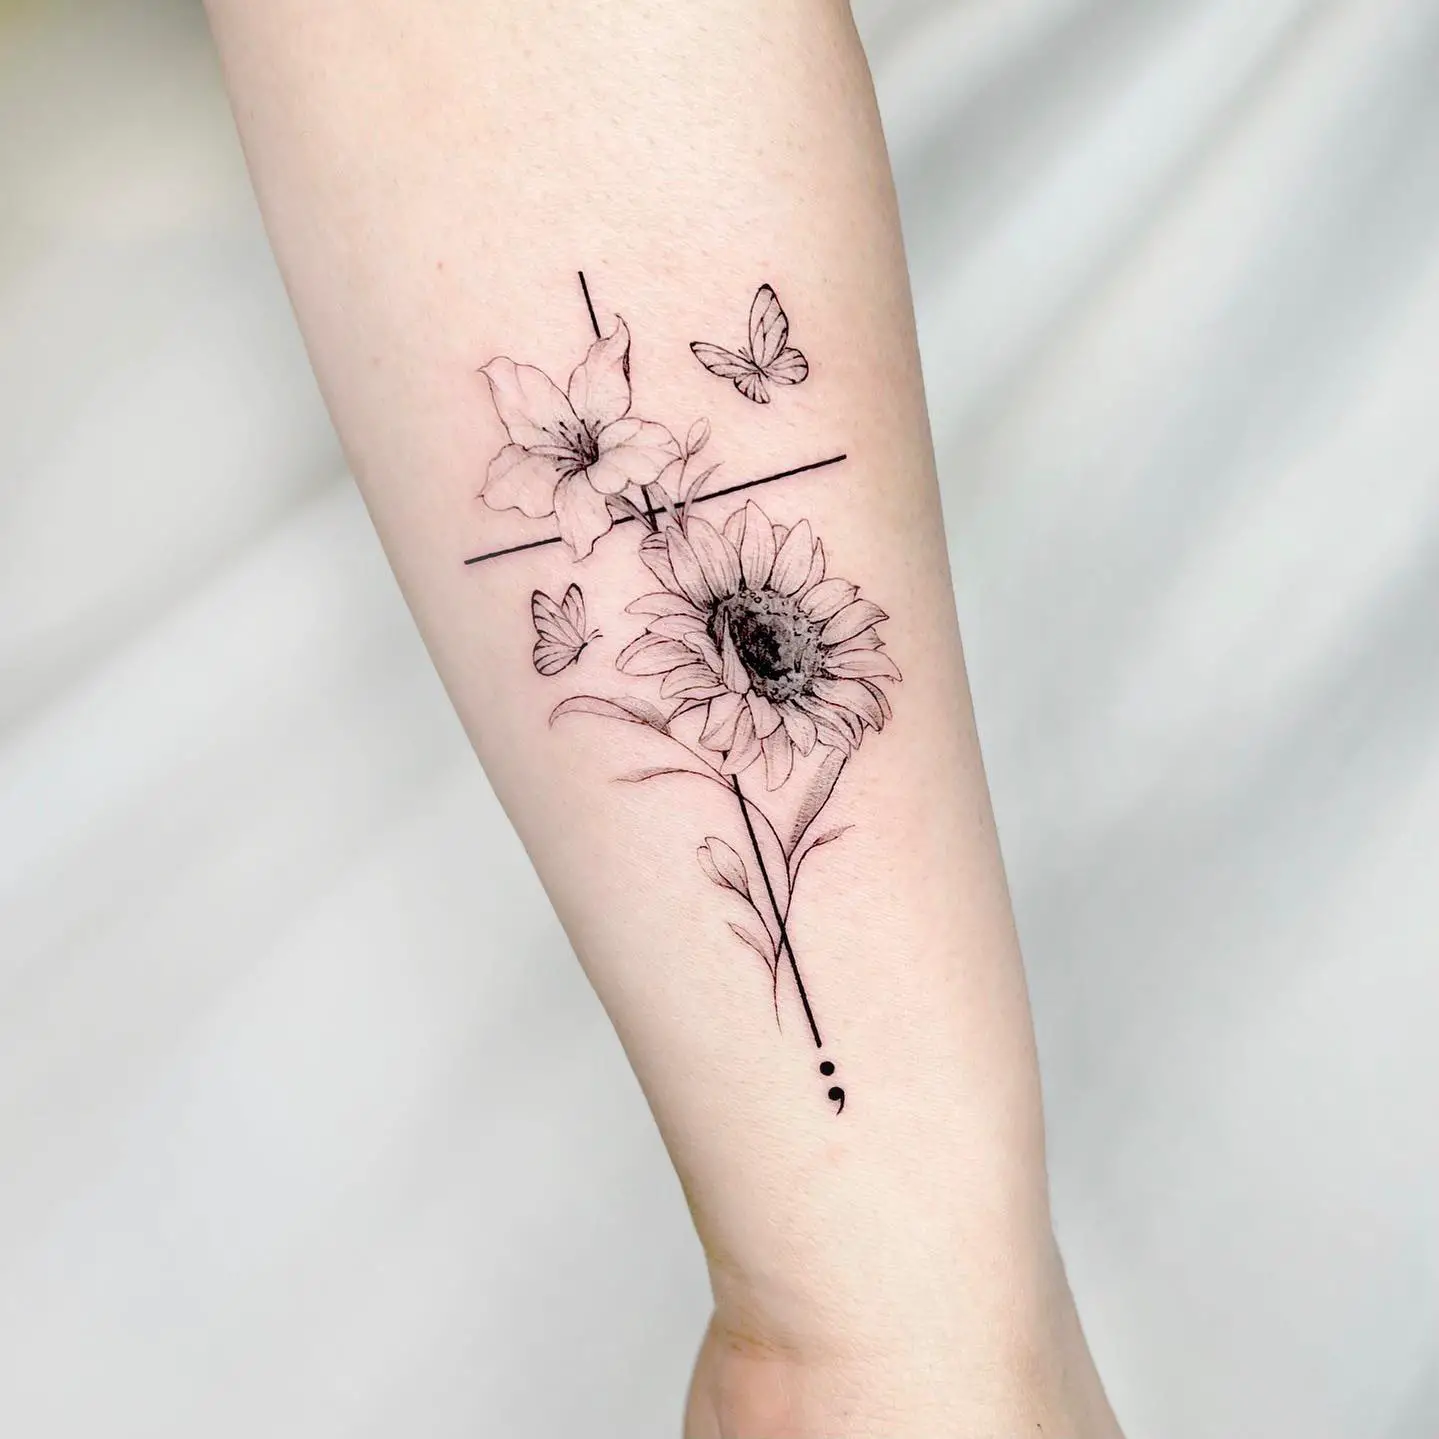 Cross tattoo design by tattooist yutae